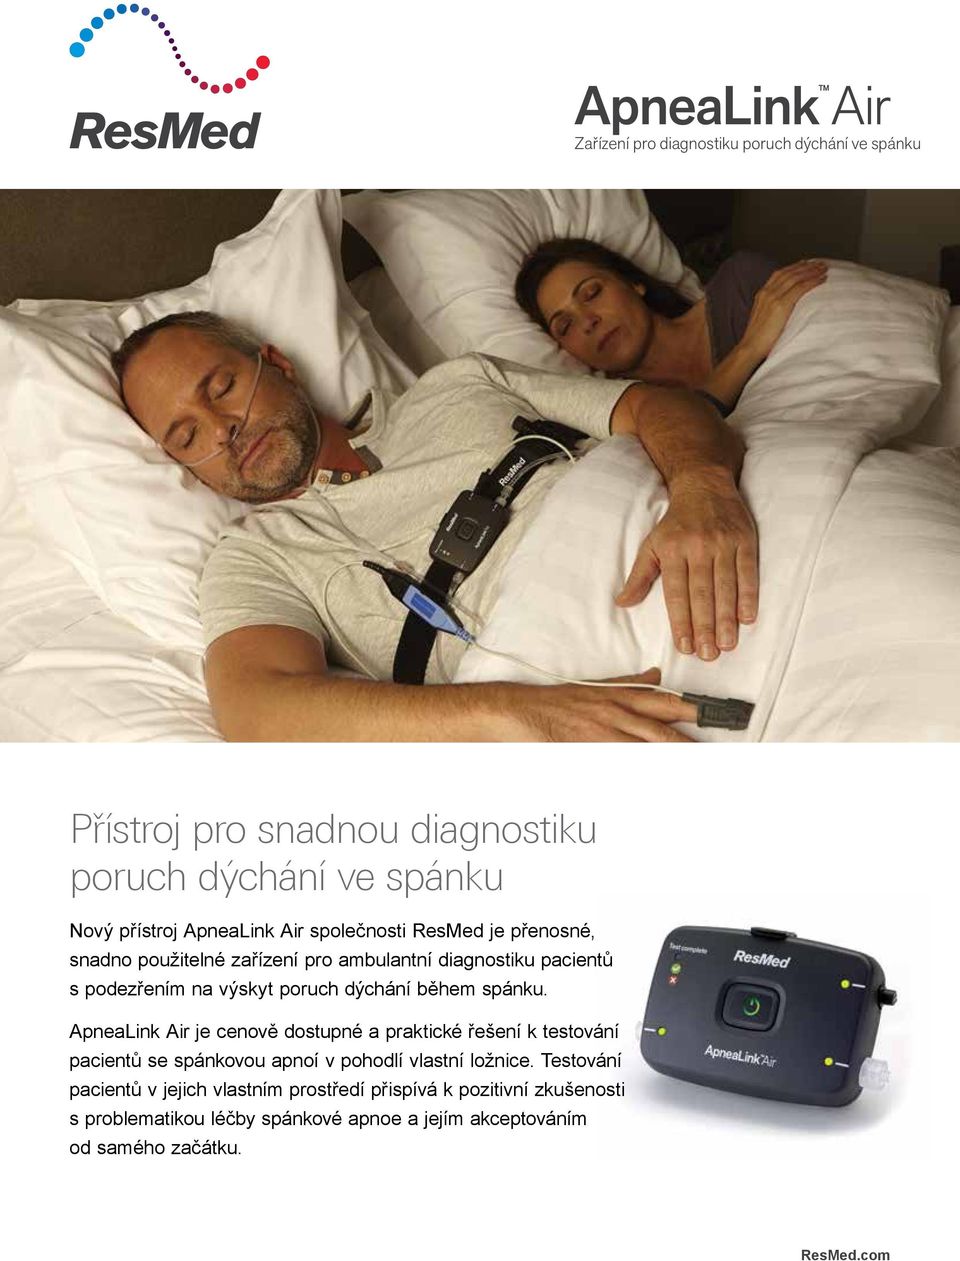 spánku. ApneaLink Air je cenově dostupné a praktické řešení k testování pacientů se spánkovou apnoí v pohodlí vlastní ložnice.